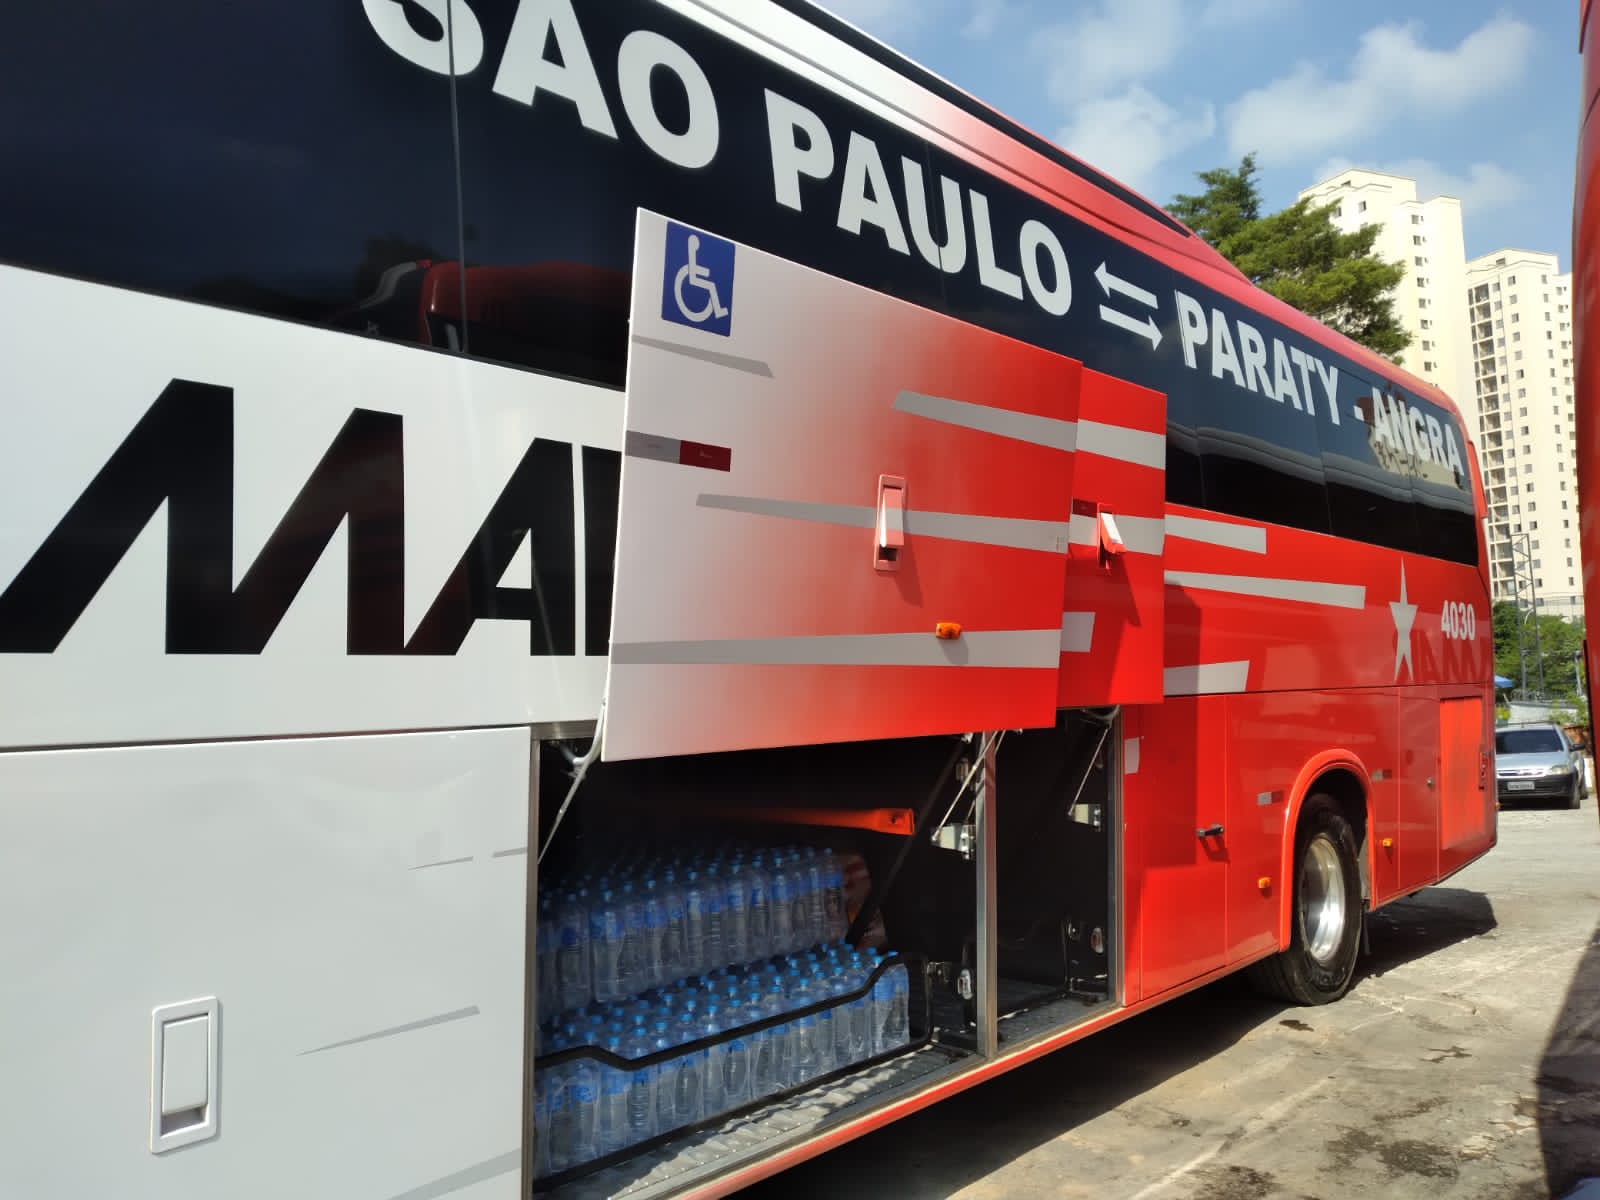 Paraty: Todos os dias, a empresa Primar tem levado água e alimentos para as vítimas da chuva no Rio de Janeiro. Saiba como ajudar